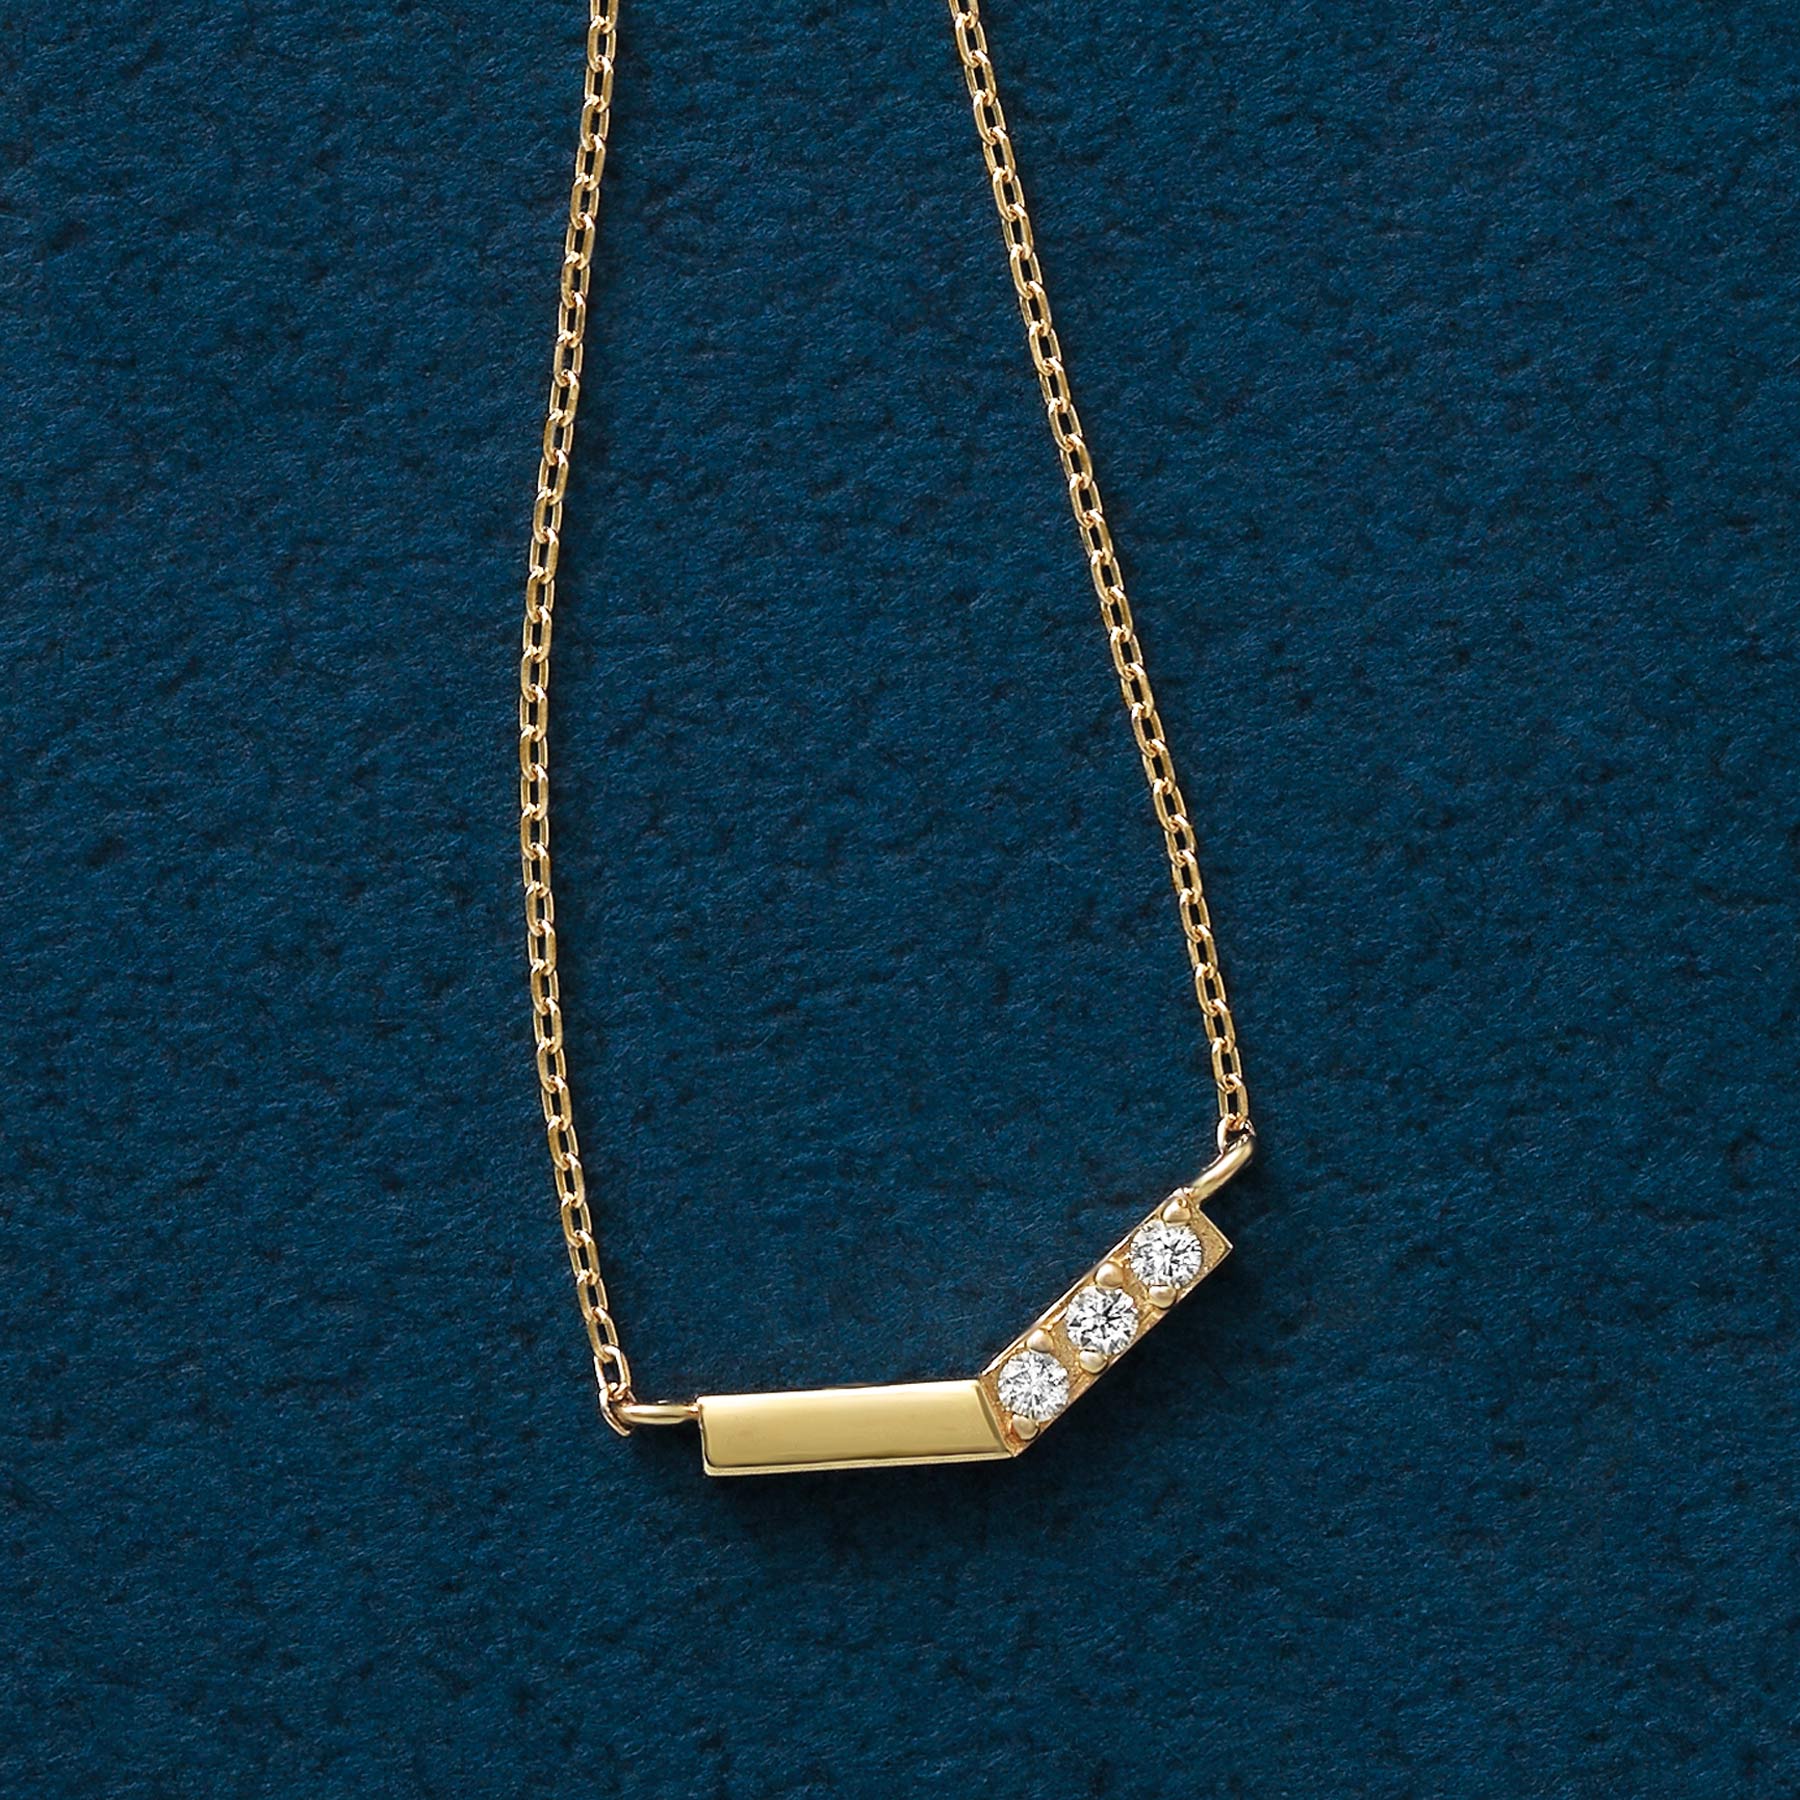 10K Yellow Gold Diamond V-Shaped 3-Stone Necklace - Product Image